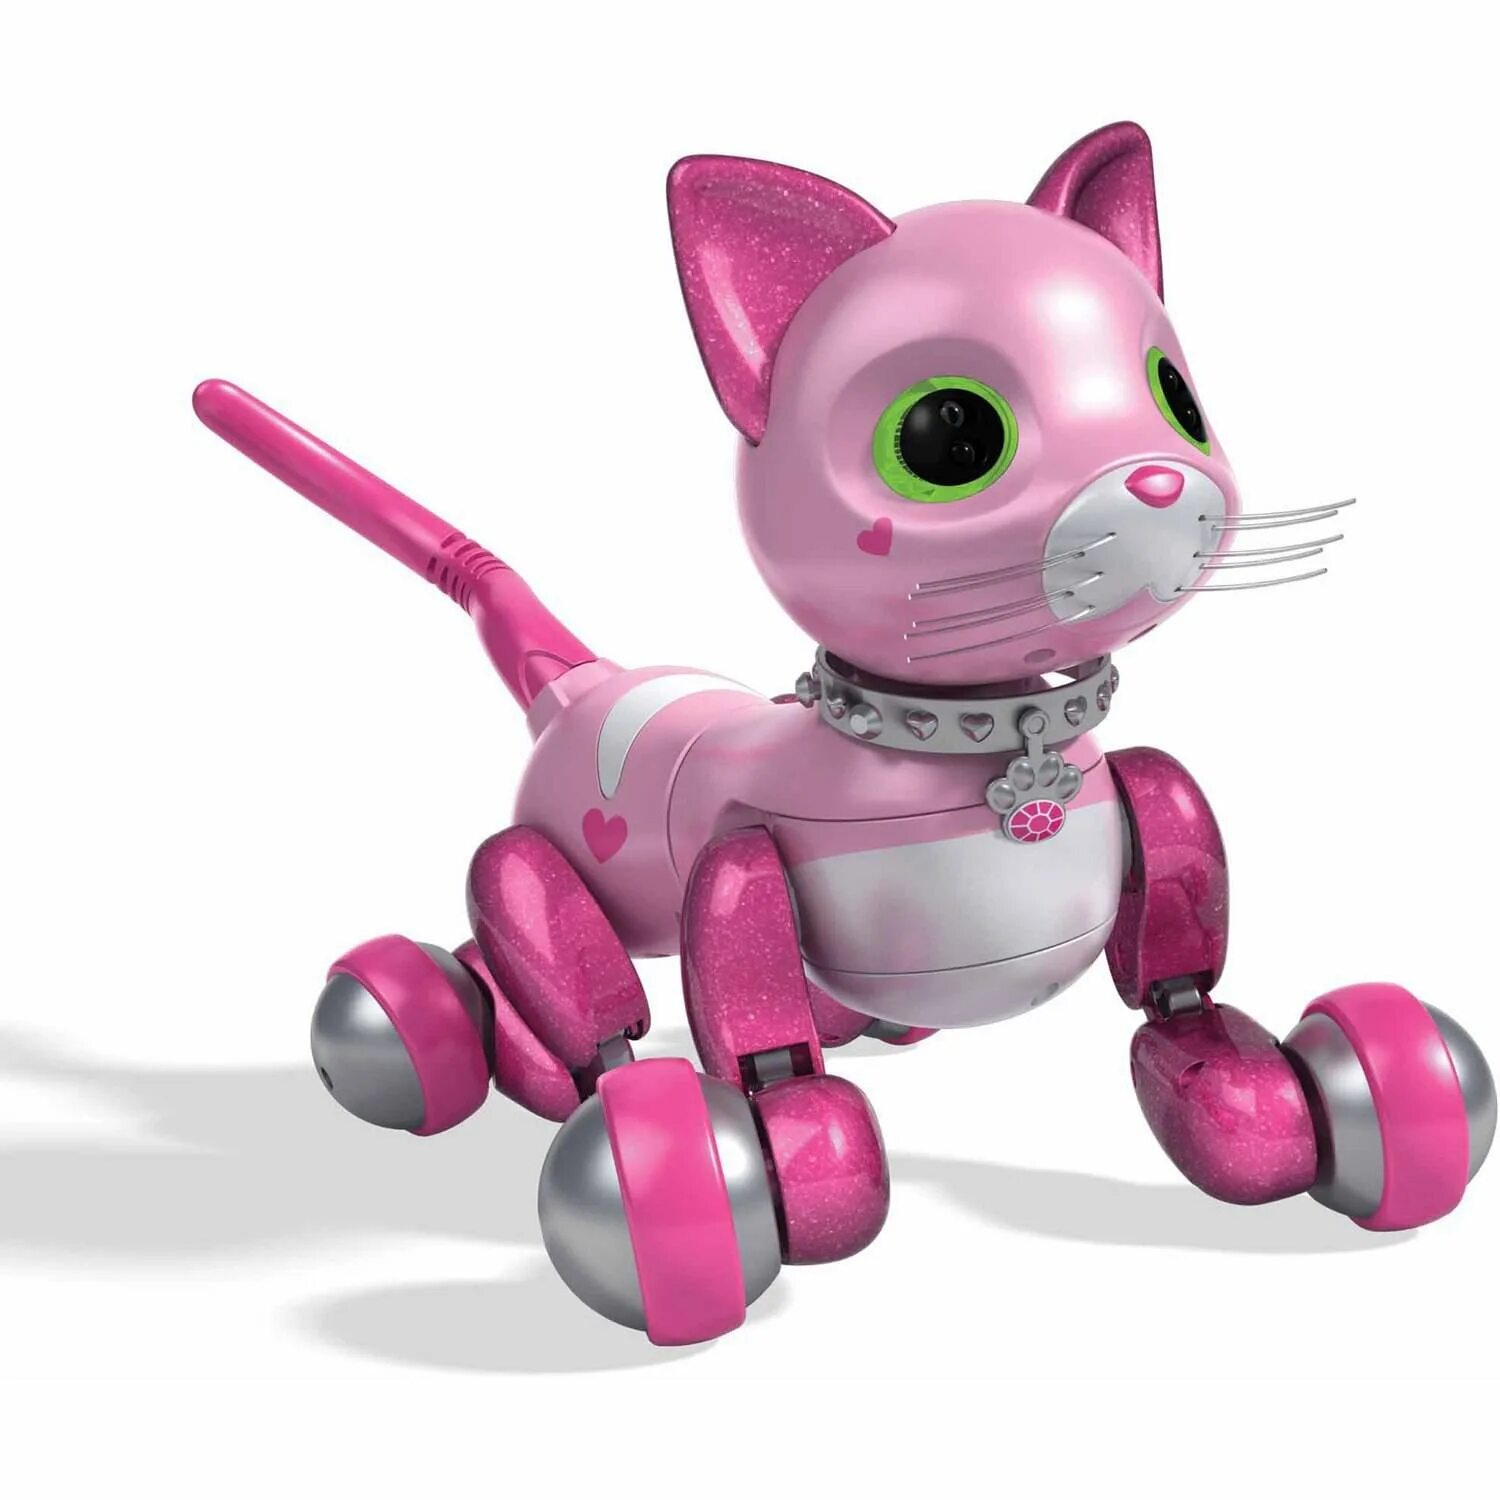 Включи железный кот. Робот zoomer Kitty. Zoomer Kitty Pink робот. Робокот MARSCAT. Интерактивная игрушка робот zoomer Kitty робот-котенок.